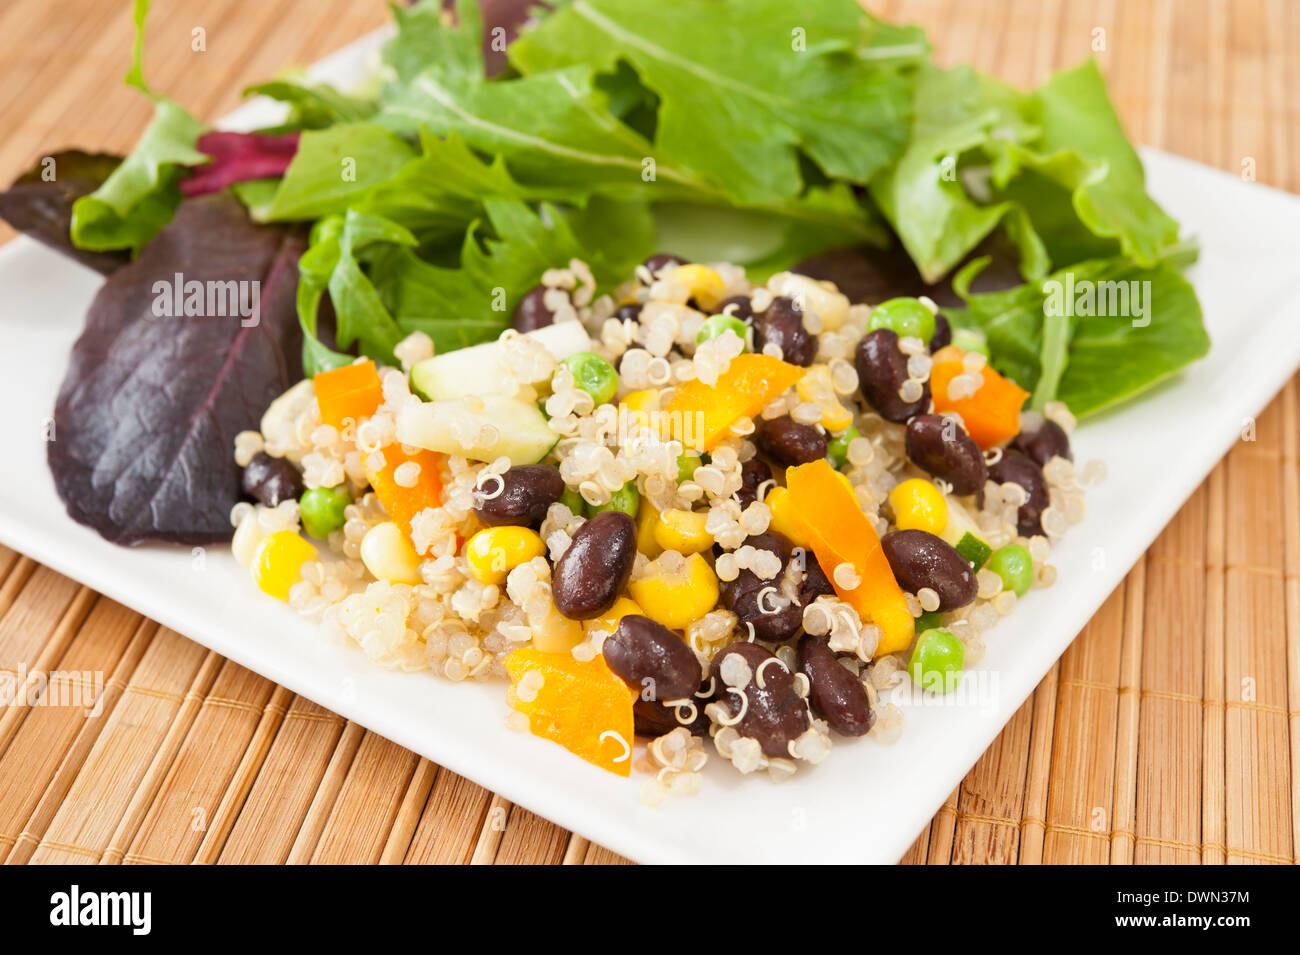 Le quinoa et légumes salade avec des haricots noirs sur une plaque blanche Banque D'Images